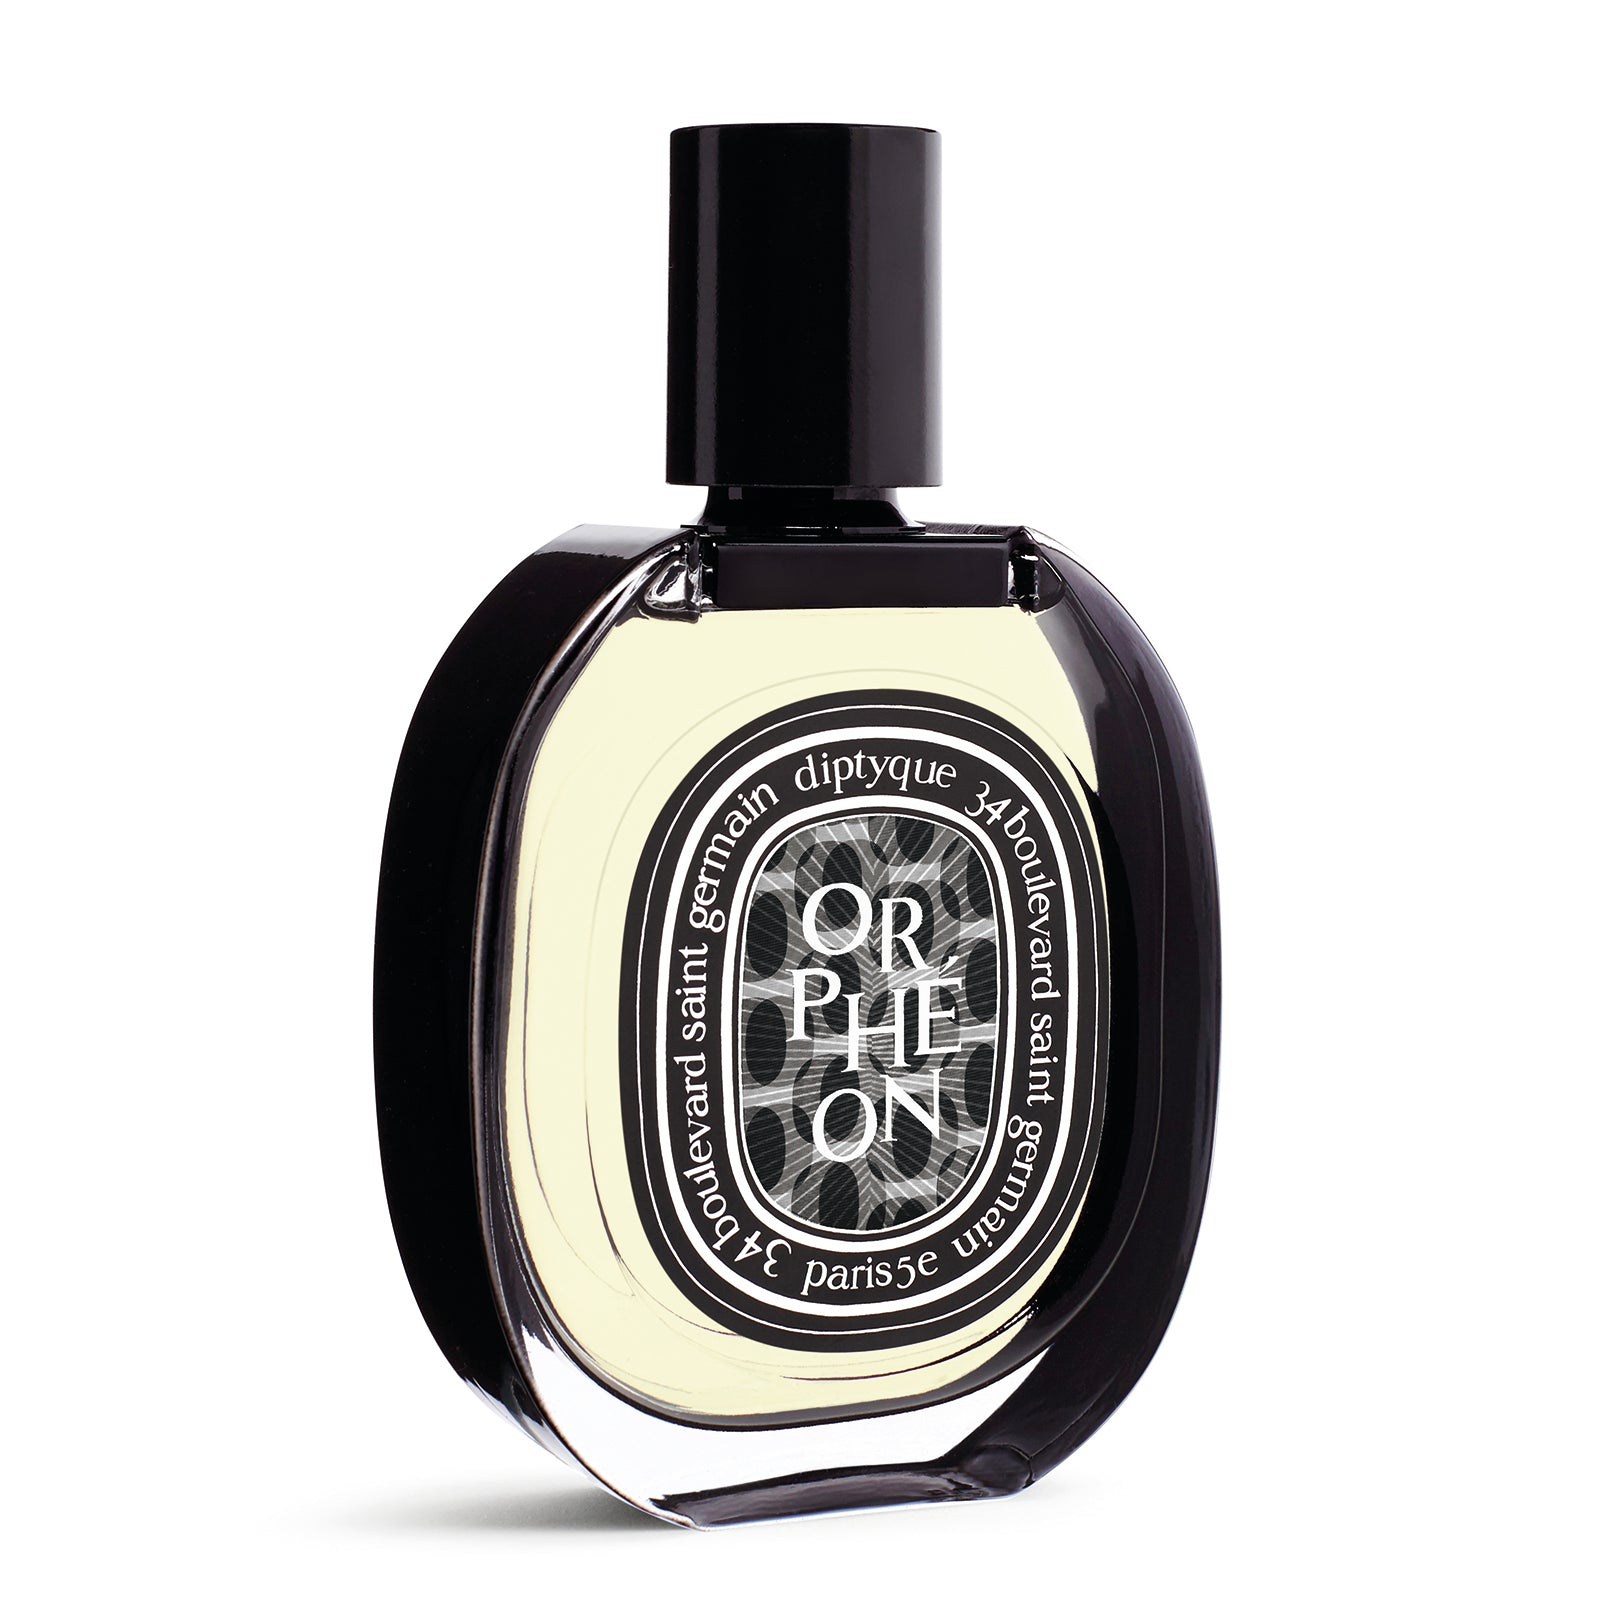 Diptyque Orphéon Eau de Parfum Livraison gratuite | Liquides Confidentiels